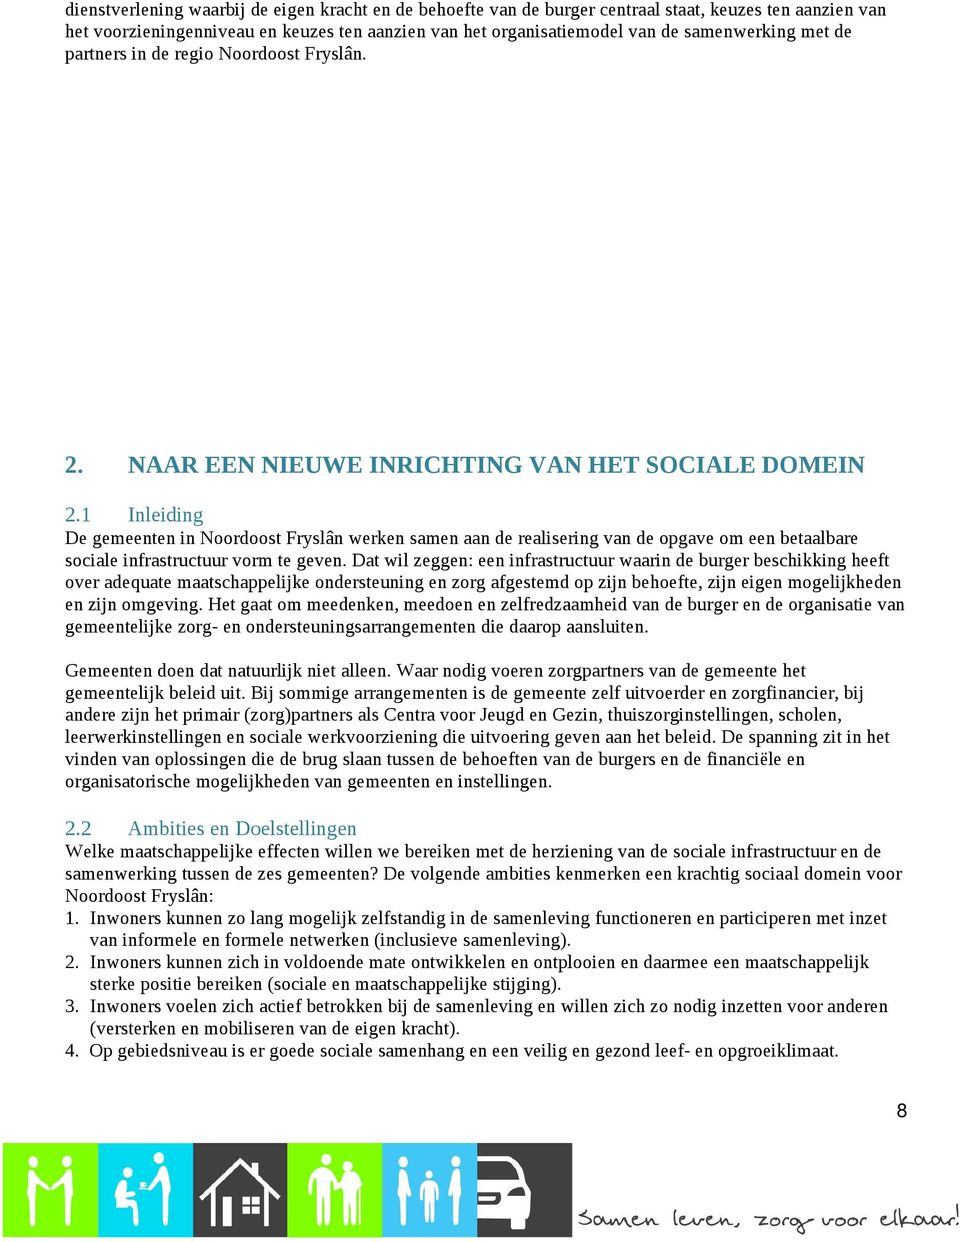 1 Inleiding De gemeenten in Noordoost Fryslân werken samen aan de realisering van de opgave om een betaalbare sociale infrastructuur vorm te geven.